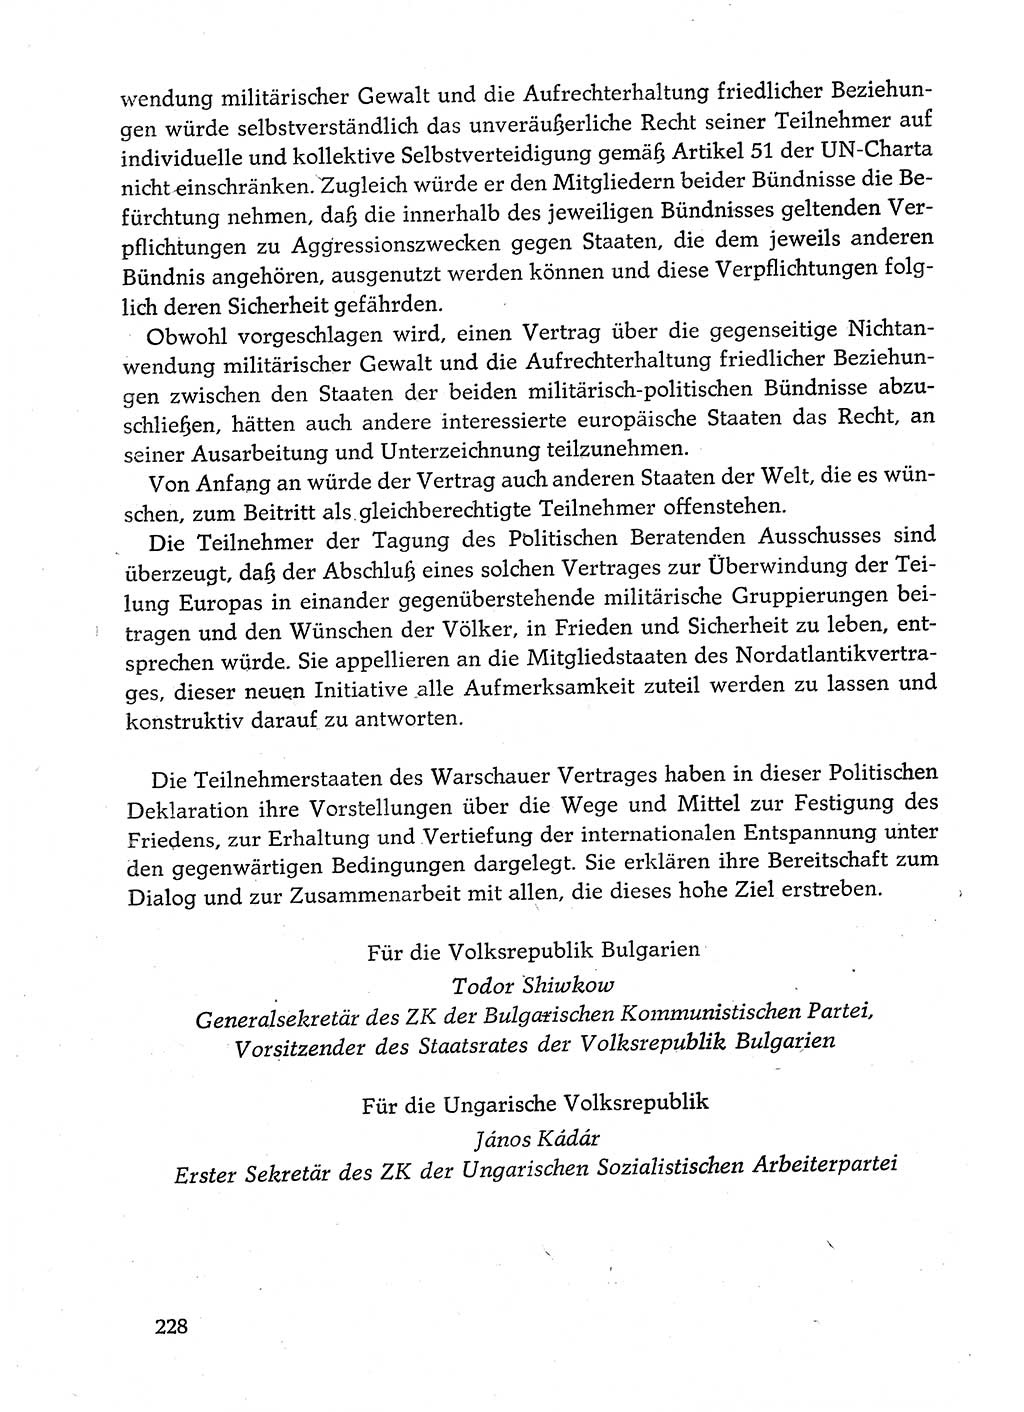 Dokumente der Sozialistischen Einheitspartei Deutschlands (SED) [Deutsche Demokratische Republik (DDR)] 1982-1983, Seite 228 (Dok. SED DDR 1982-1983, S. 228)